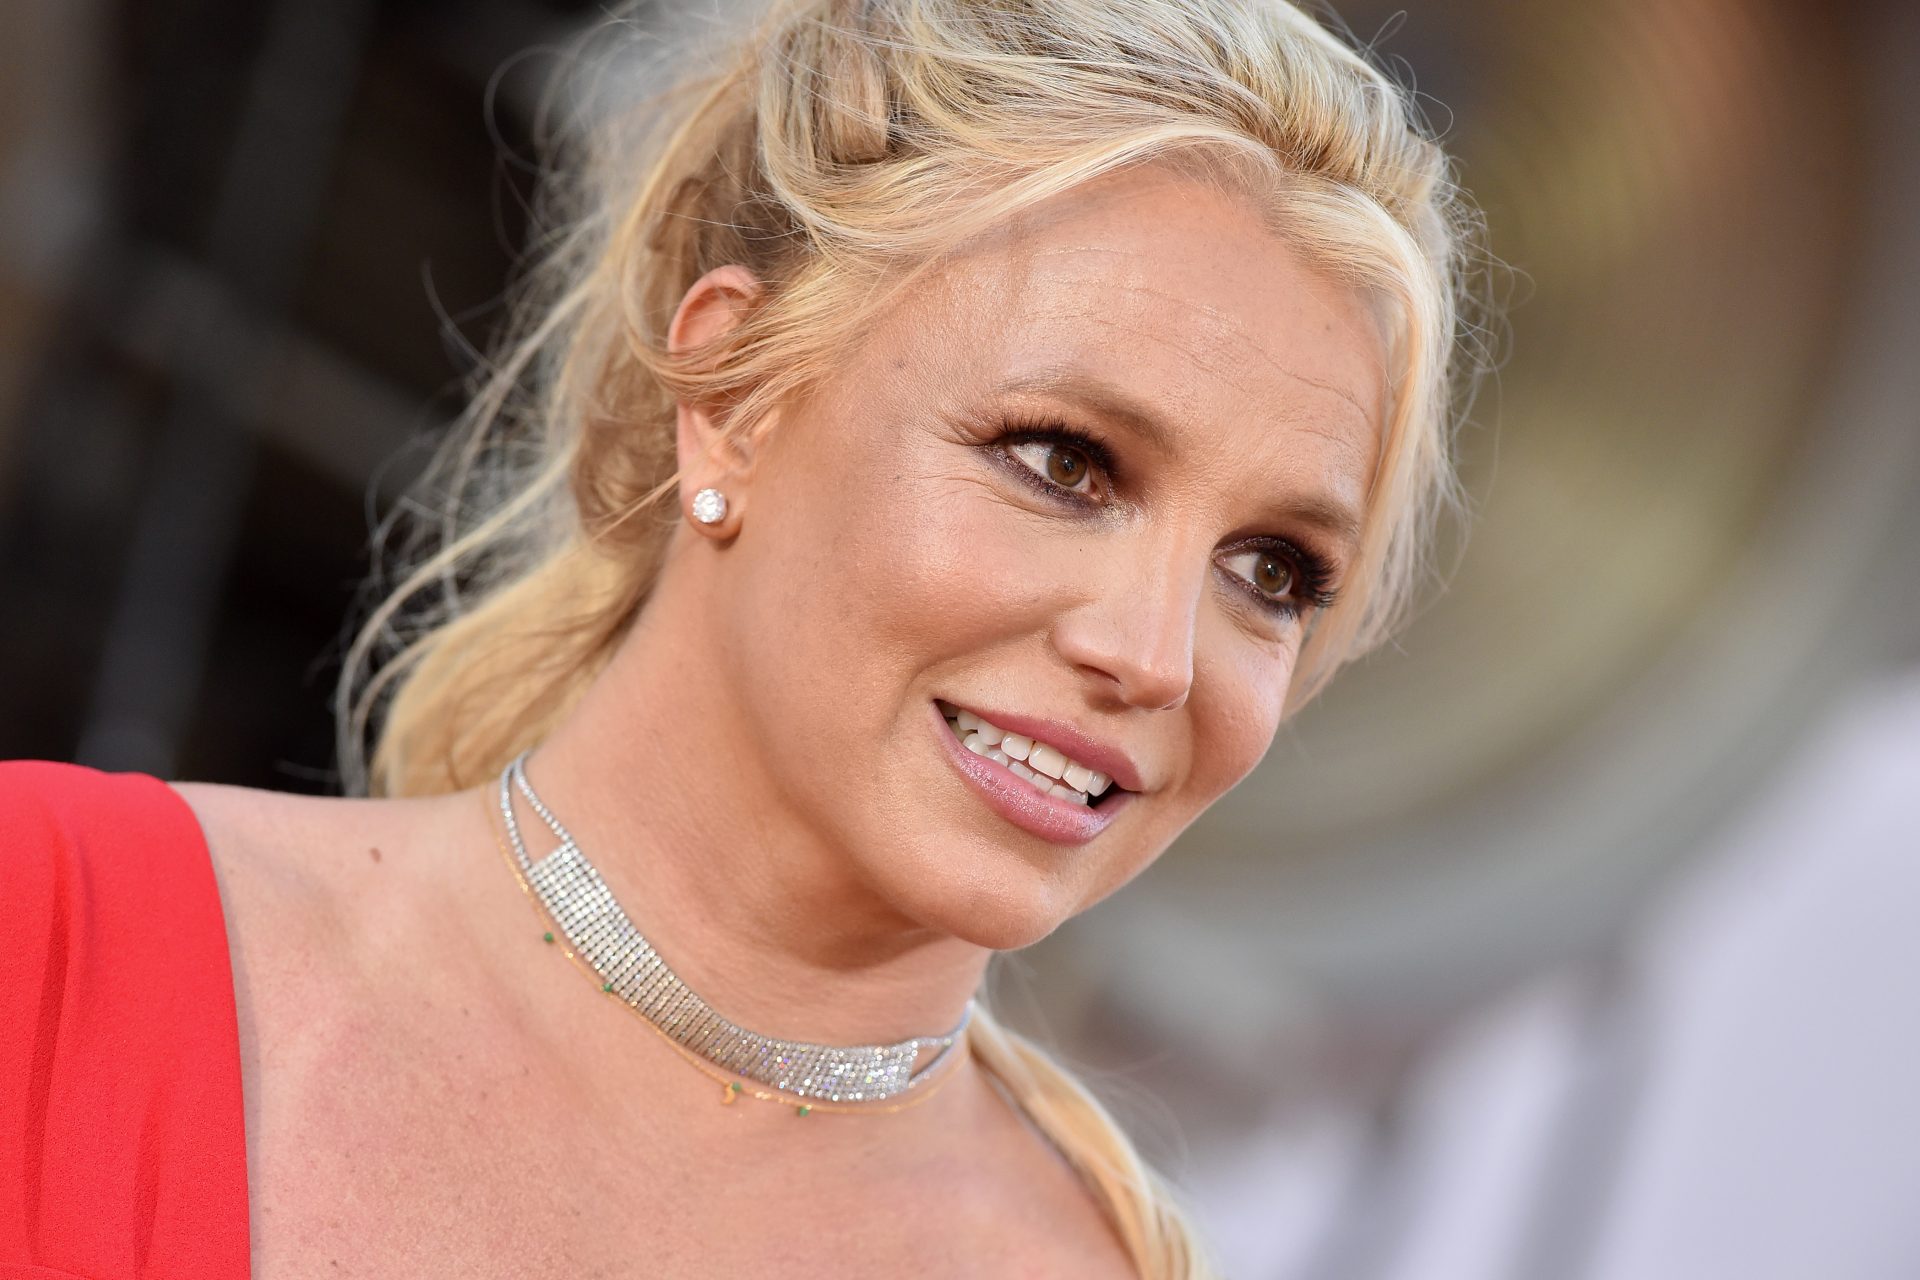 Cos'è successo (di nuovo) a Britney Spears? Si parla di paramedici, ferite, urla e accuse